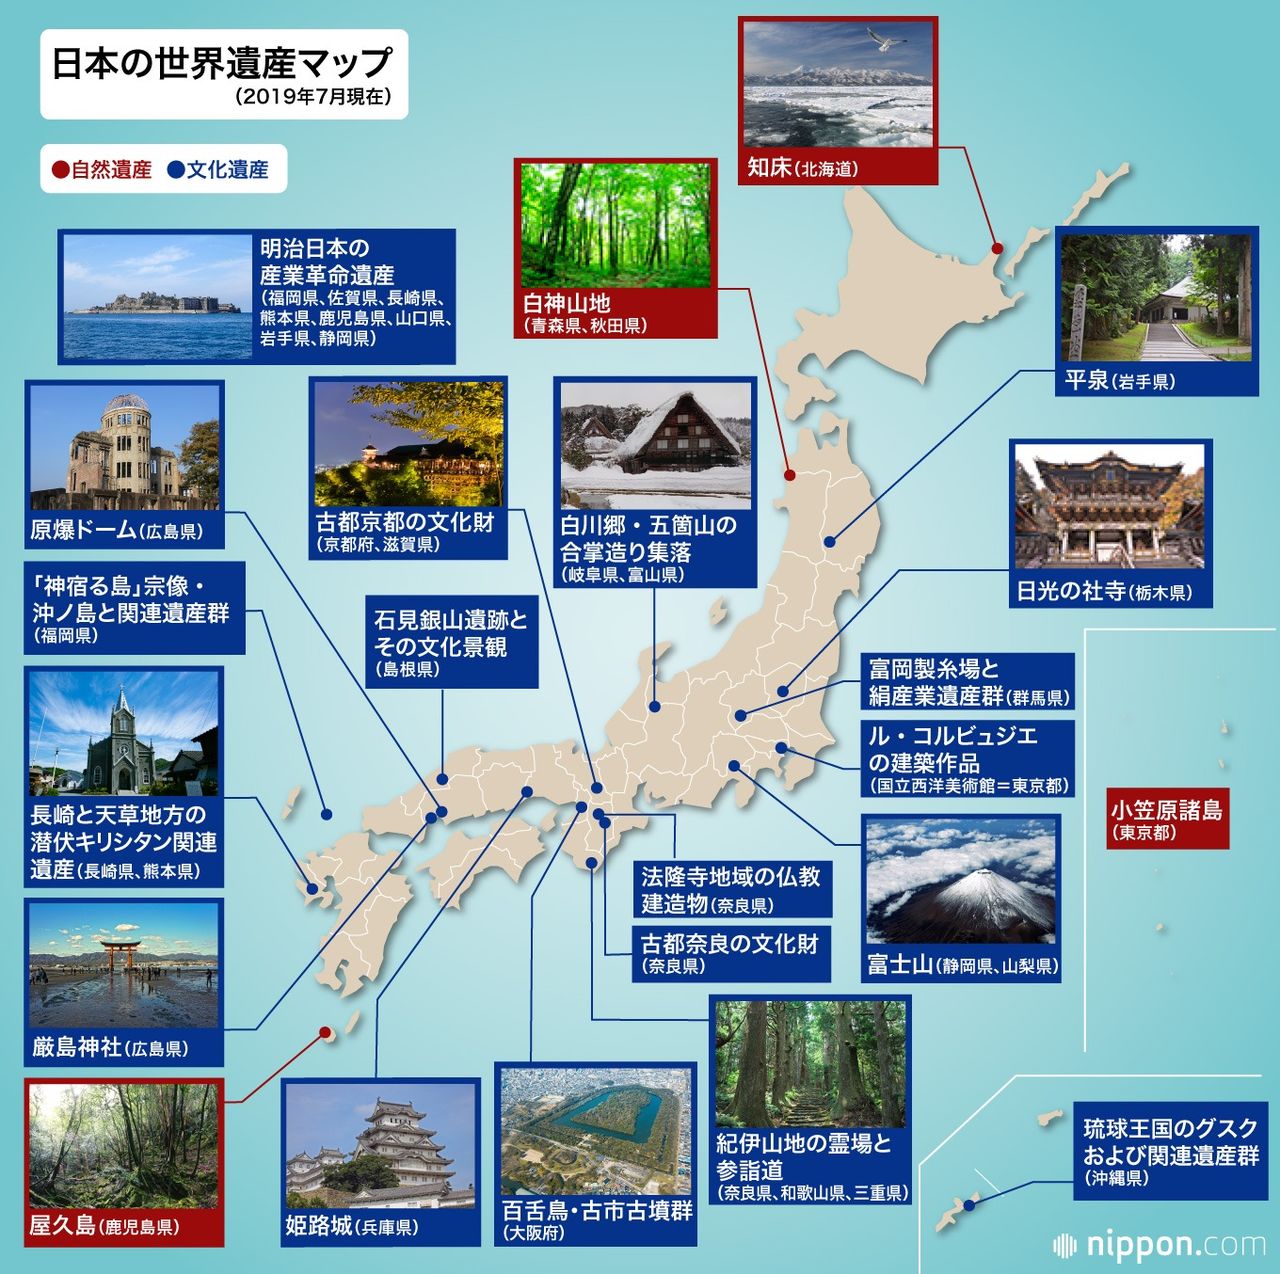 「瓢」の付く日本列島の古墳一覧